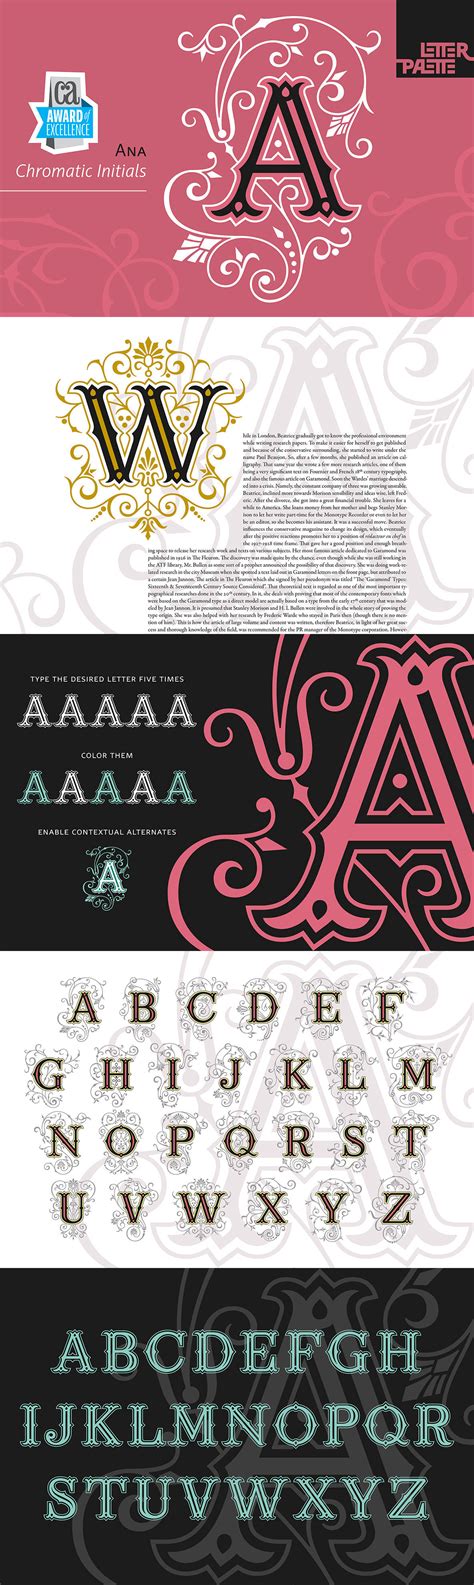 Ana Font Youworkforthem Lettering Lettering Design Monogram Fonts